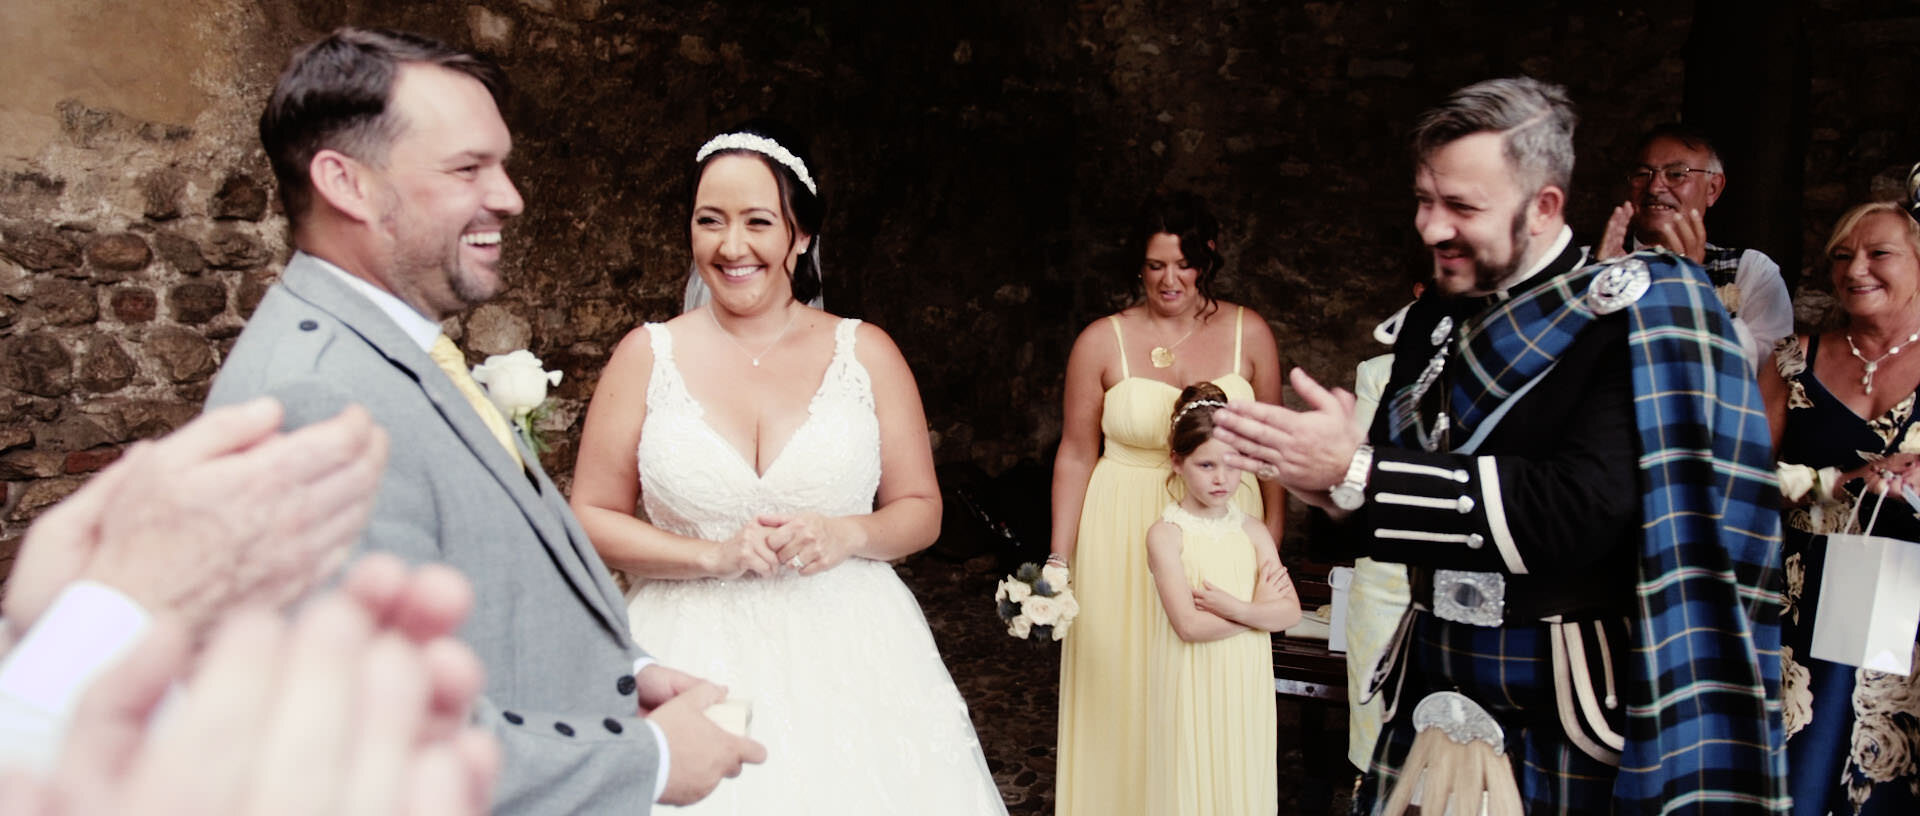 Elisa & Gavin Destination Wedding Film Lake Garda Malcesine 1.jpg